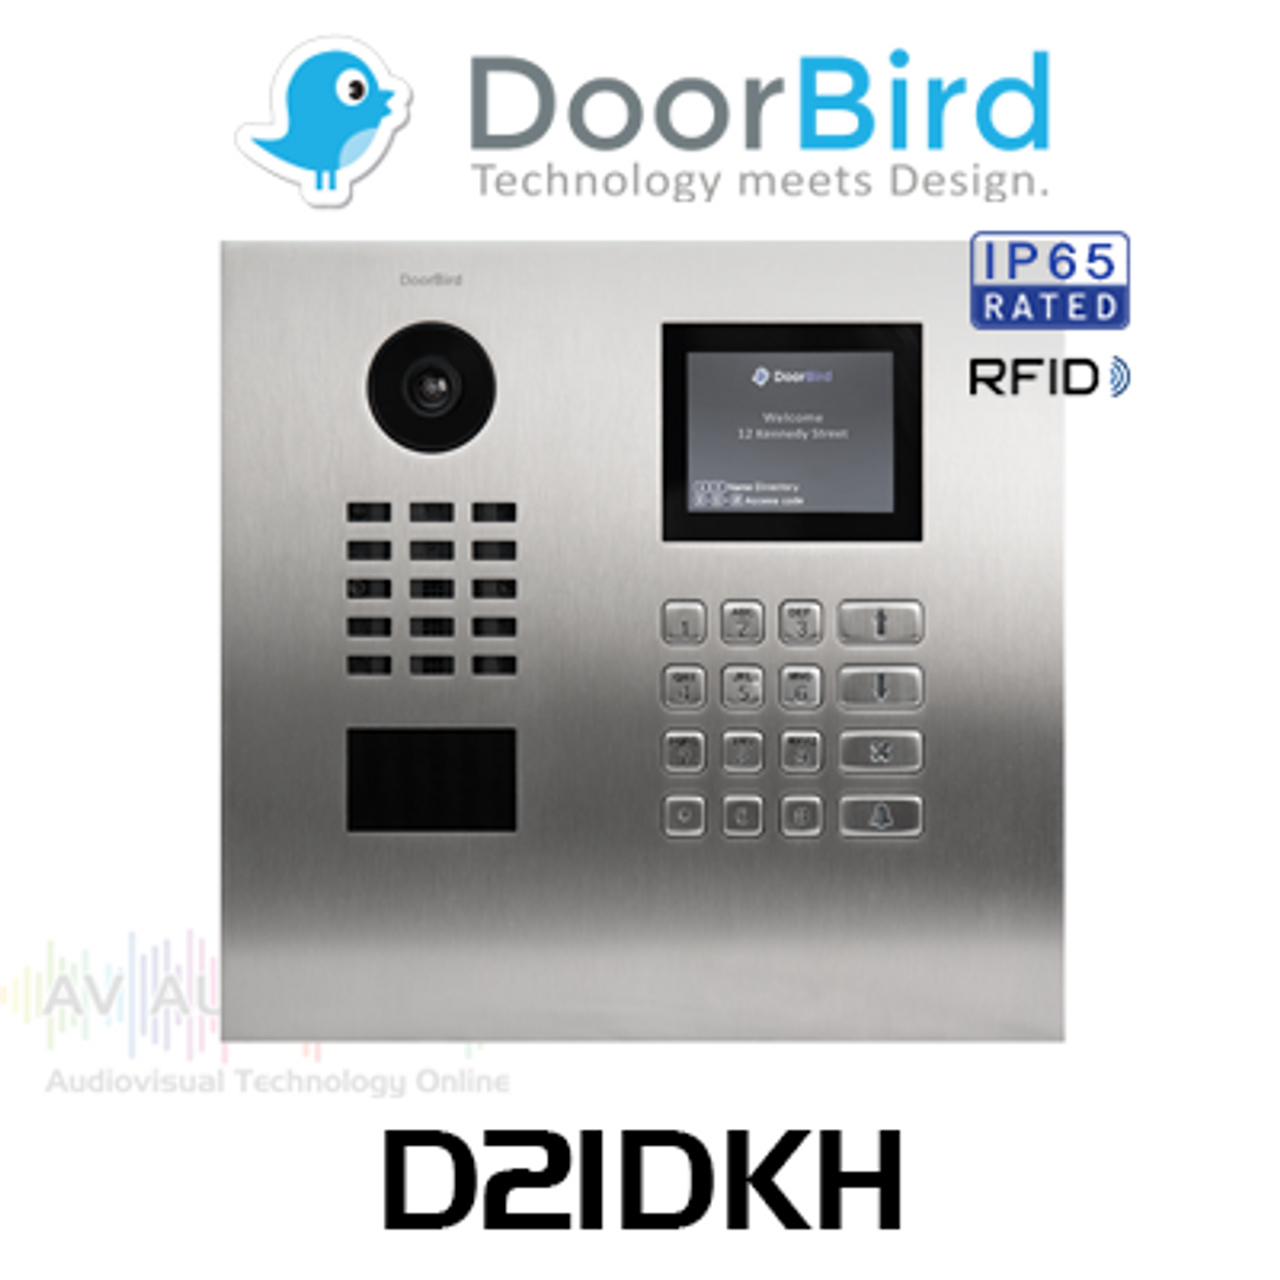 DoorBird D21DKH IP Intercom HD Video Flush Mount Door Station with Keypad & Display